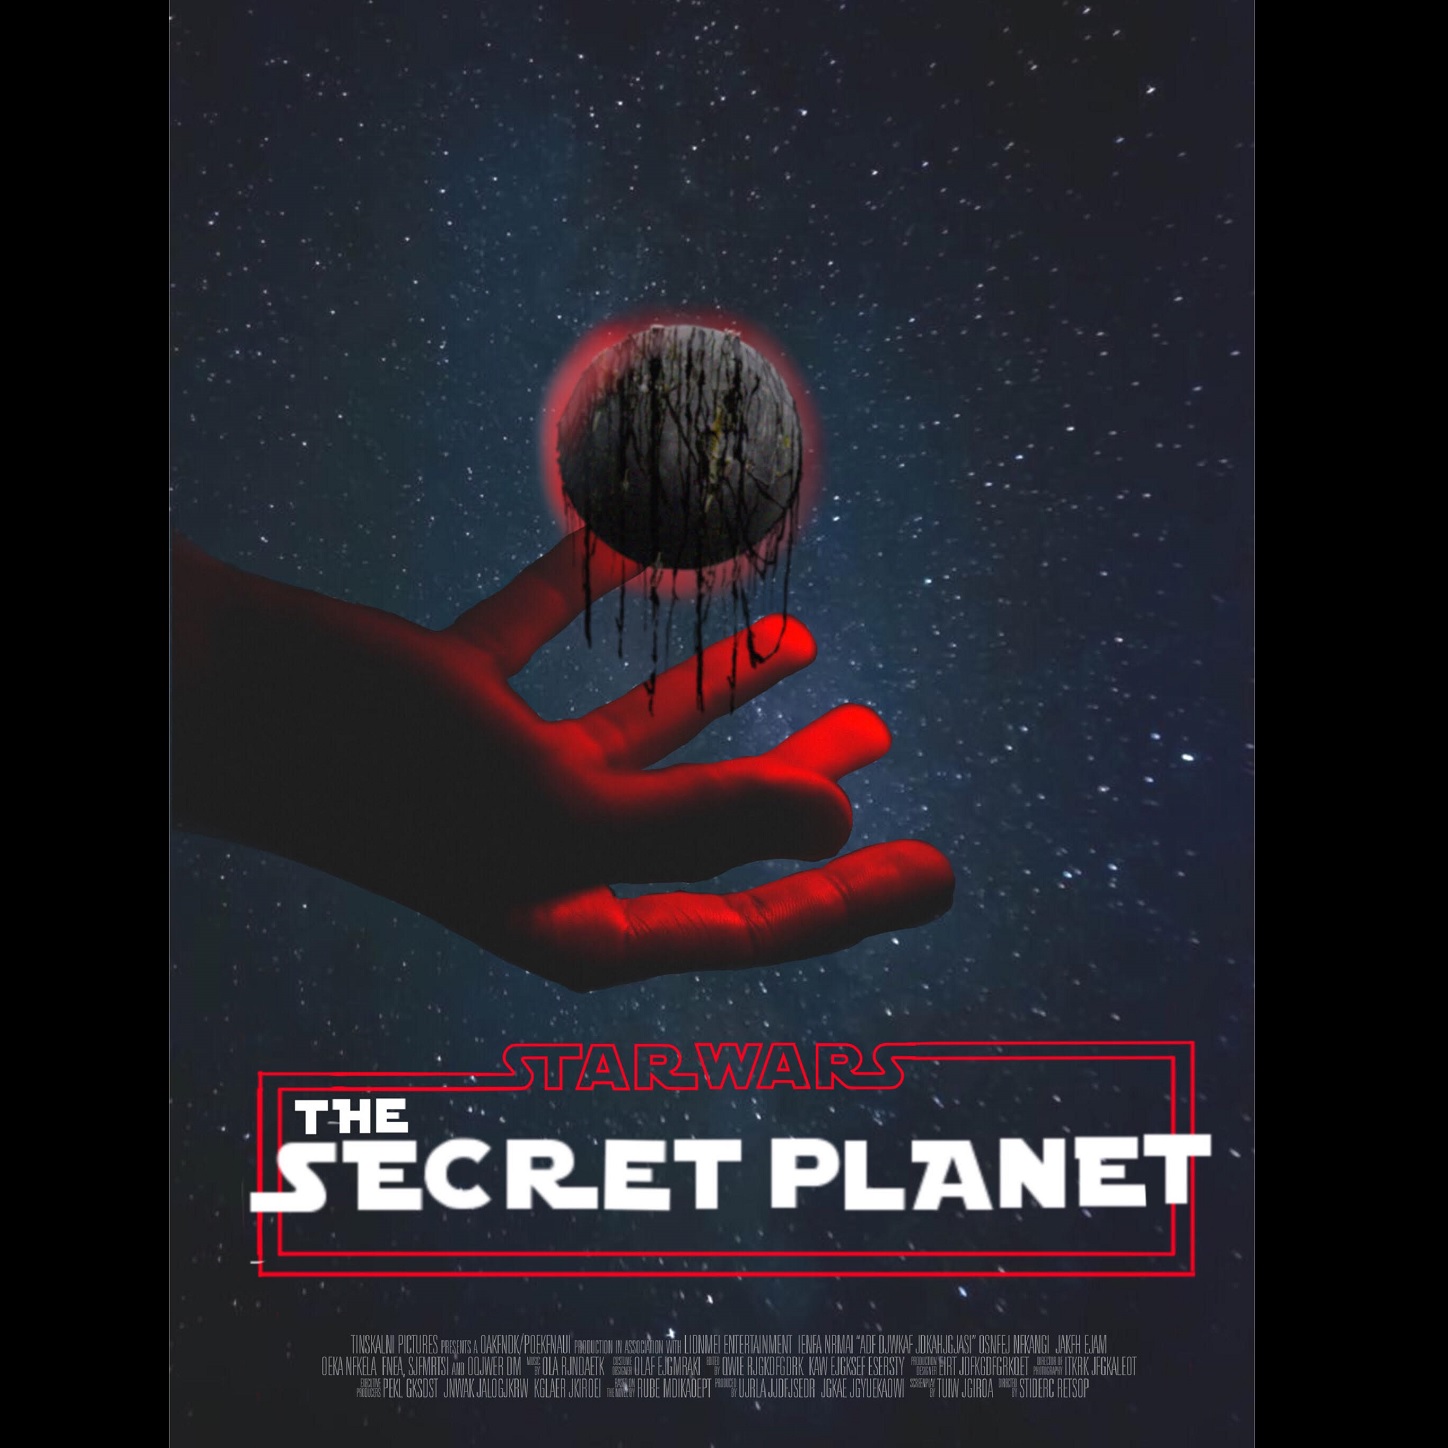 Episode 53 - Star Wars - The Secret Planet